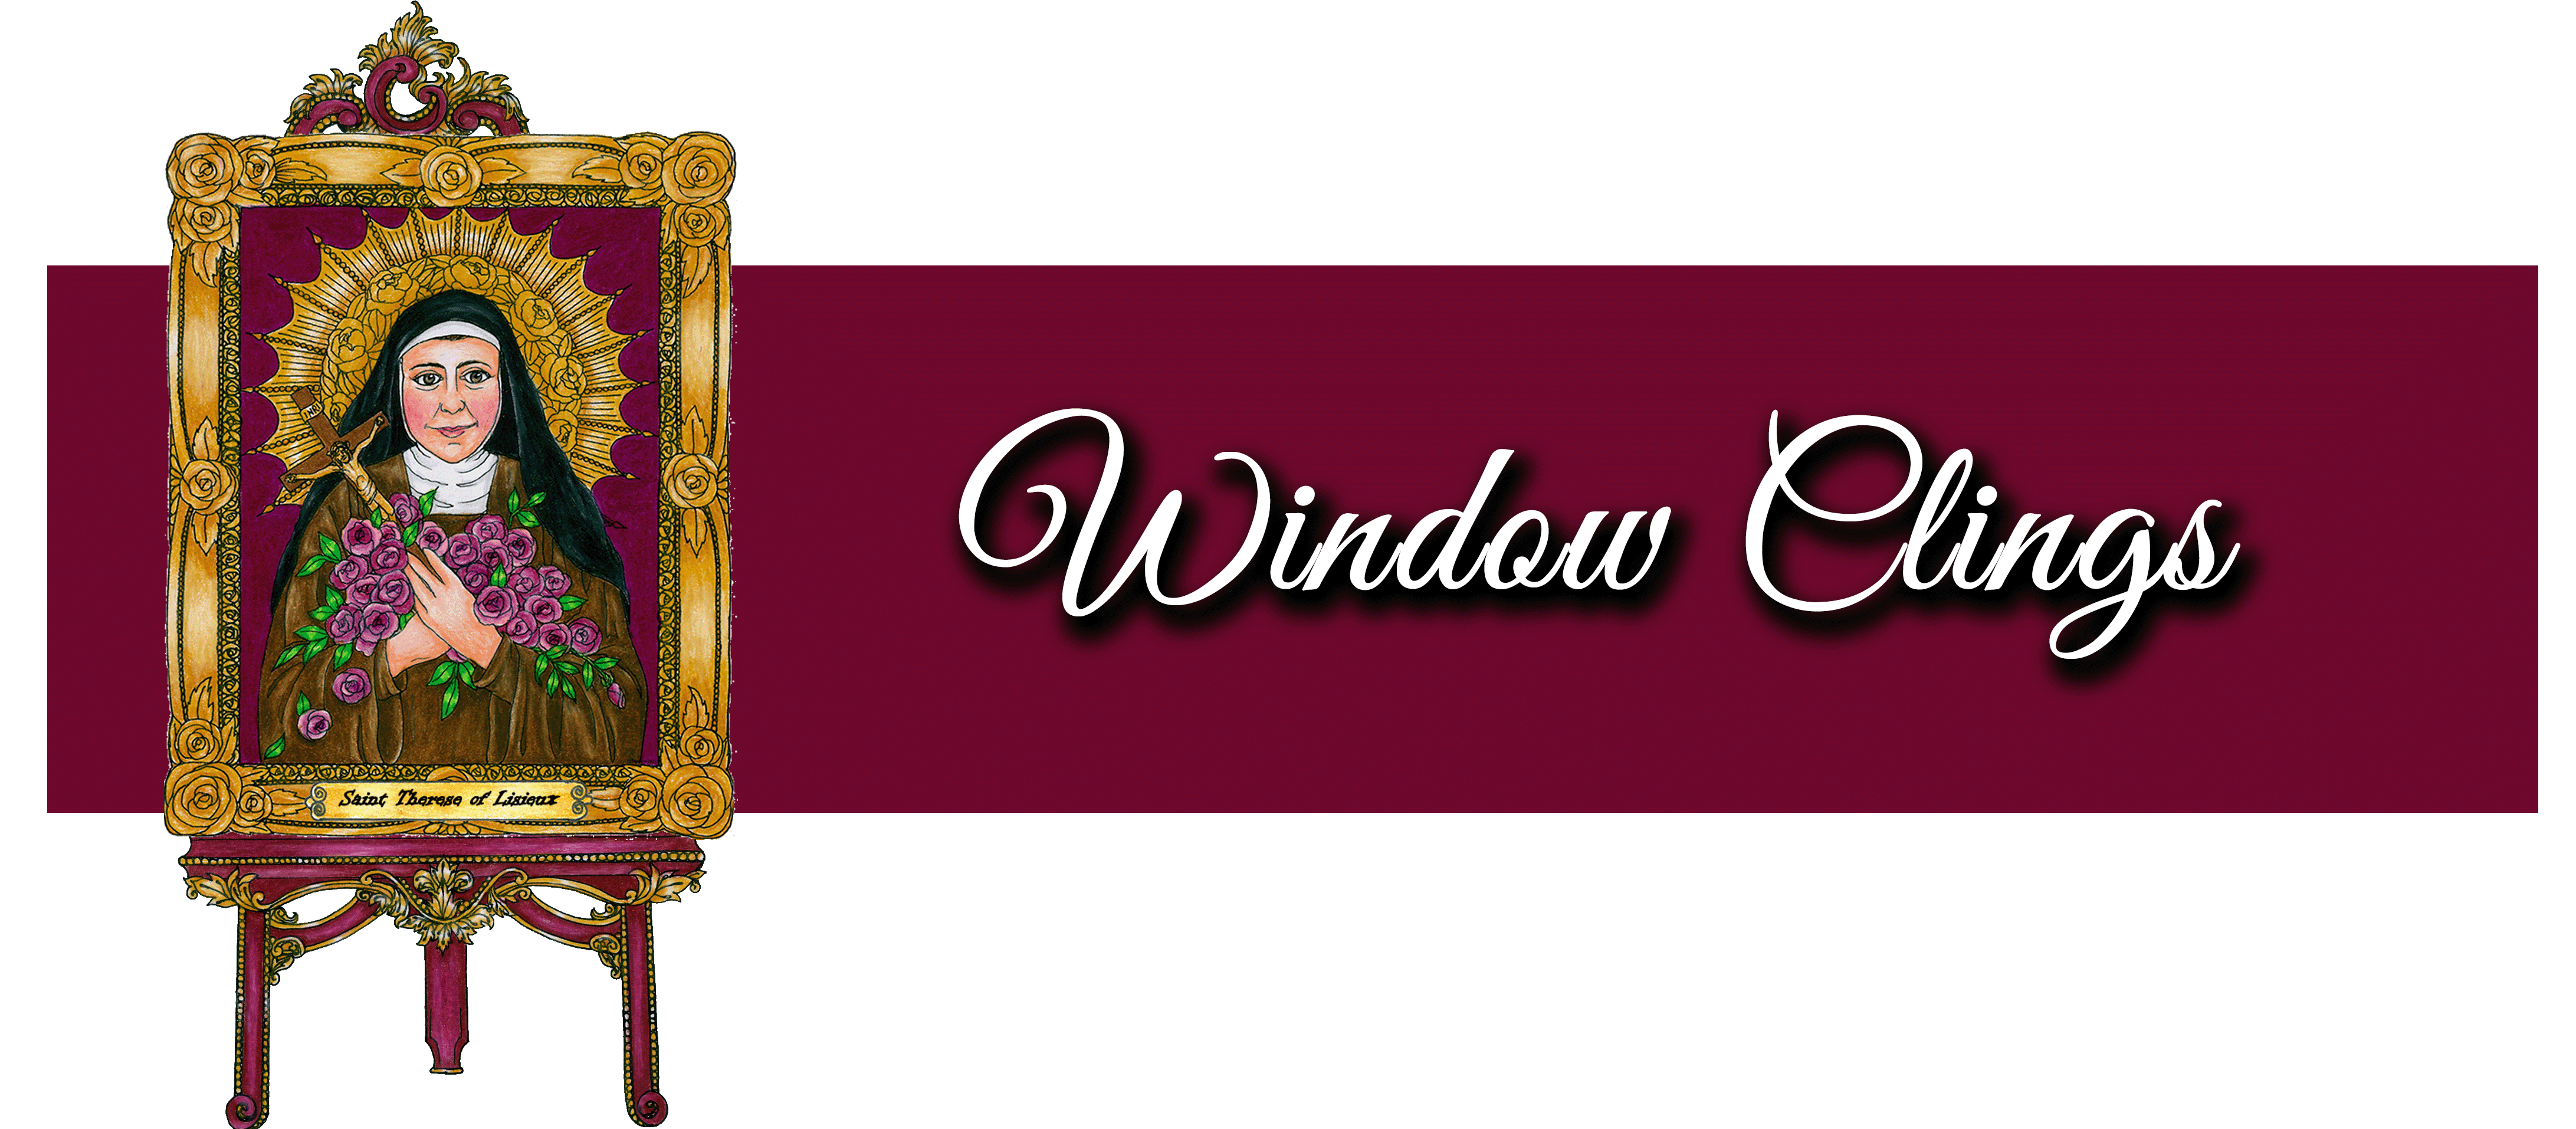 Window Clings